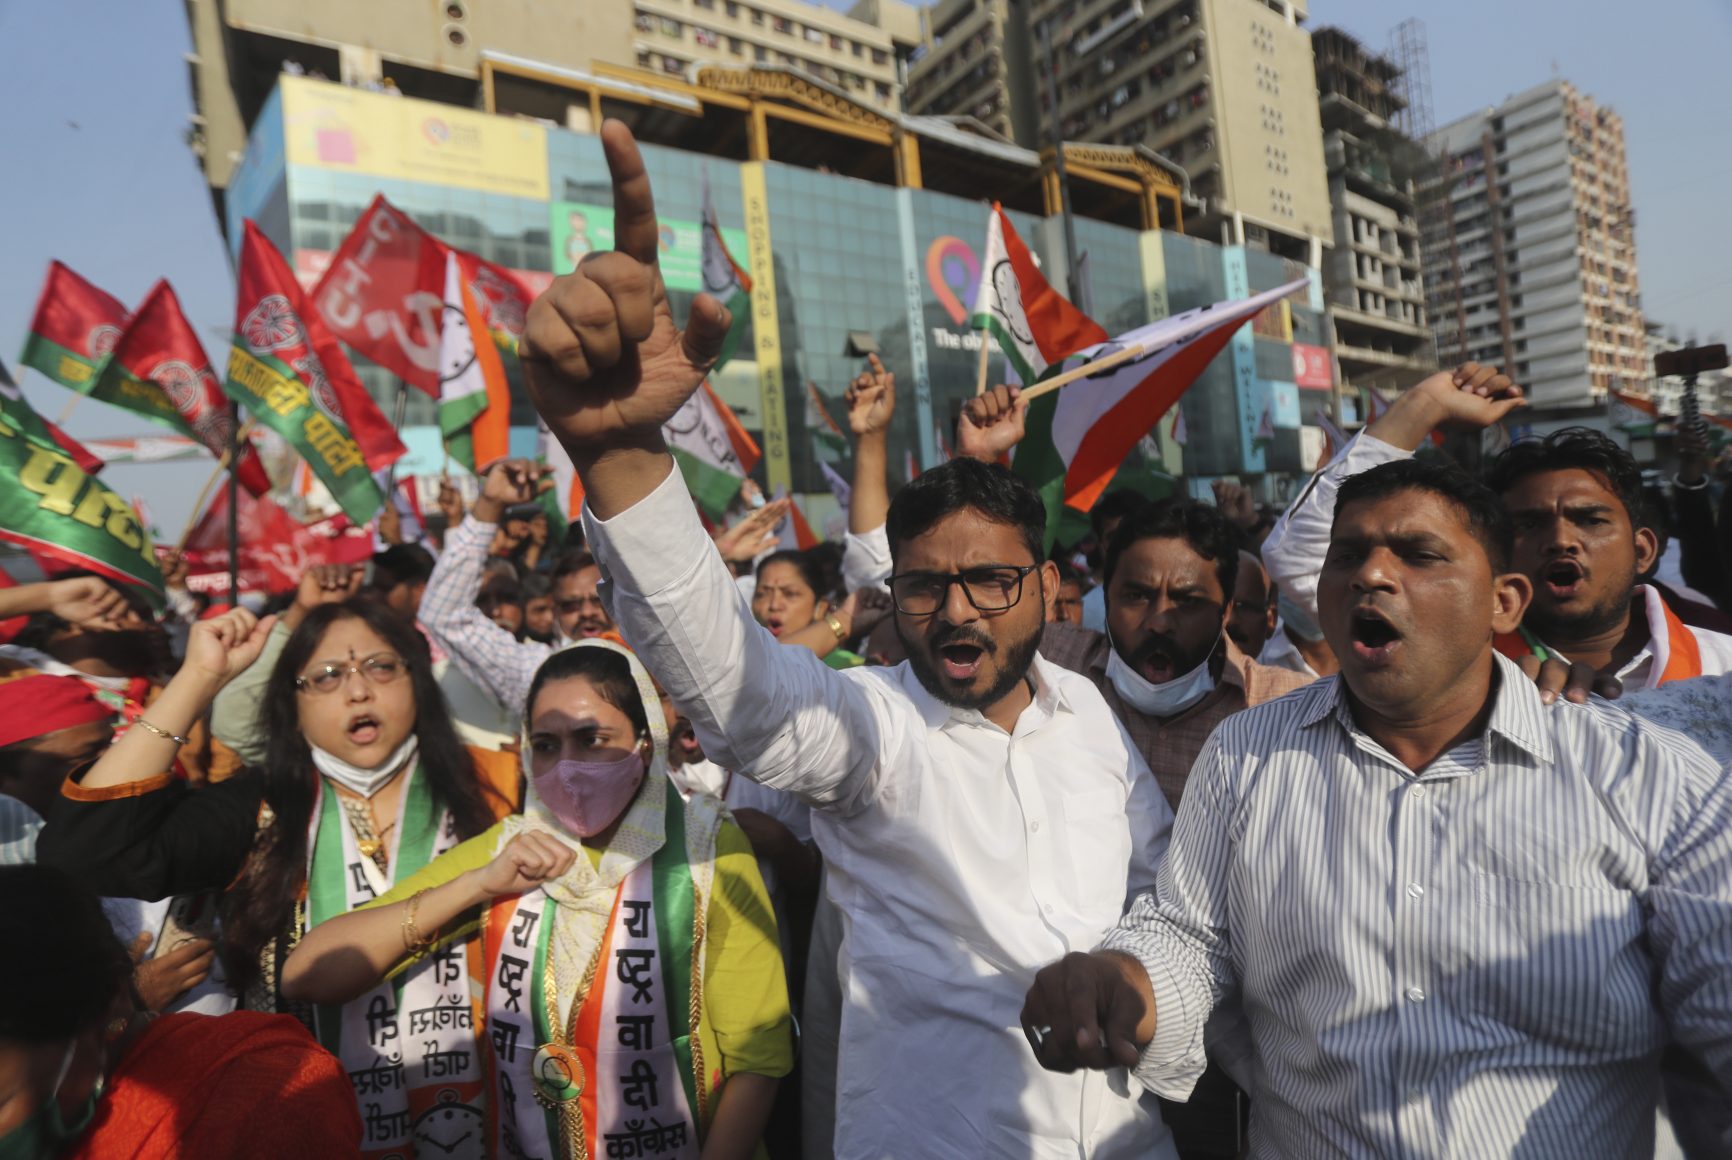 protestors in Mumbai, India